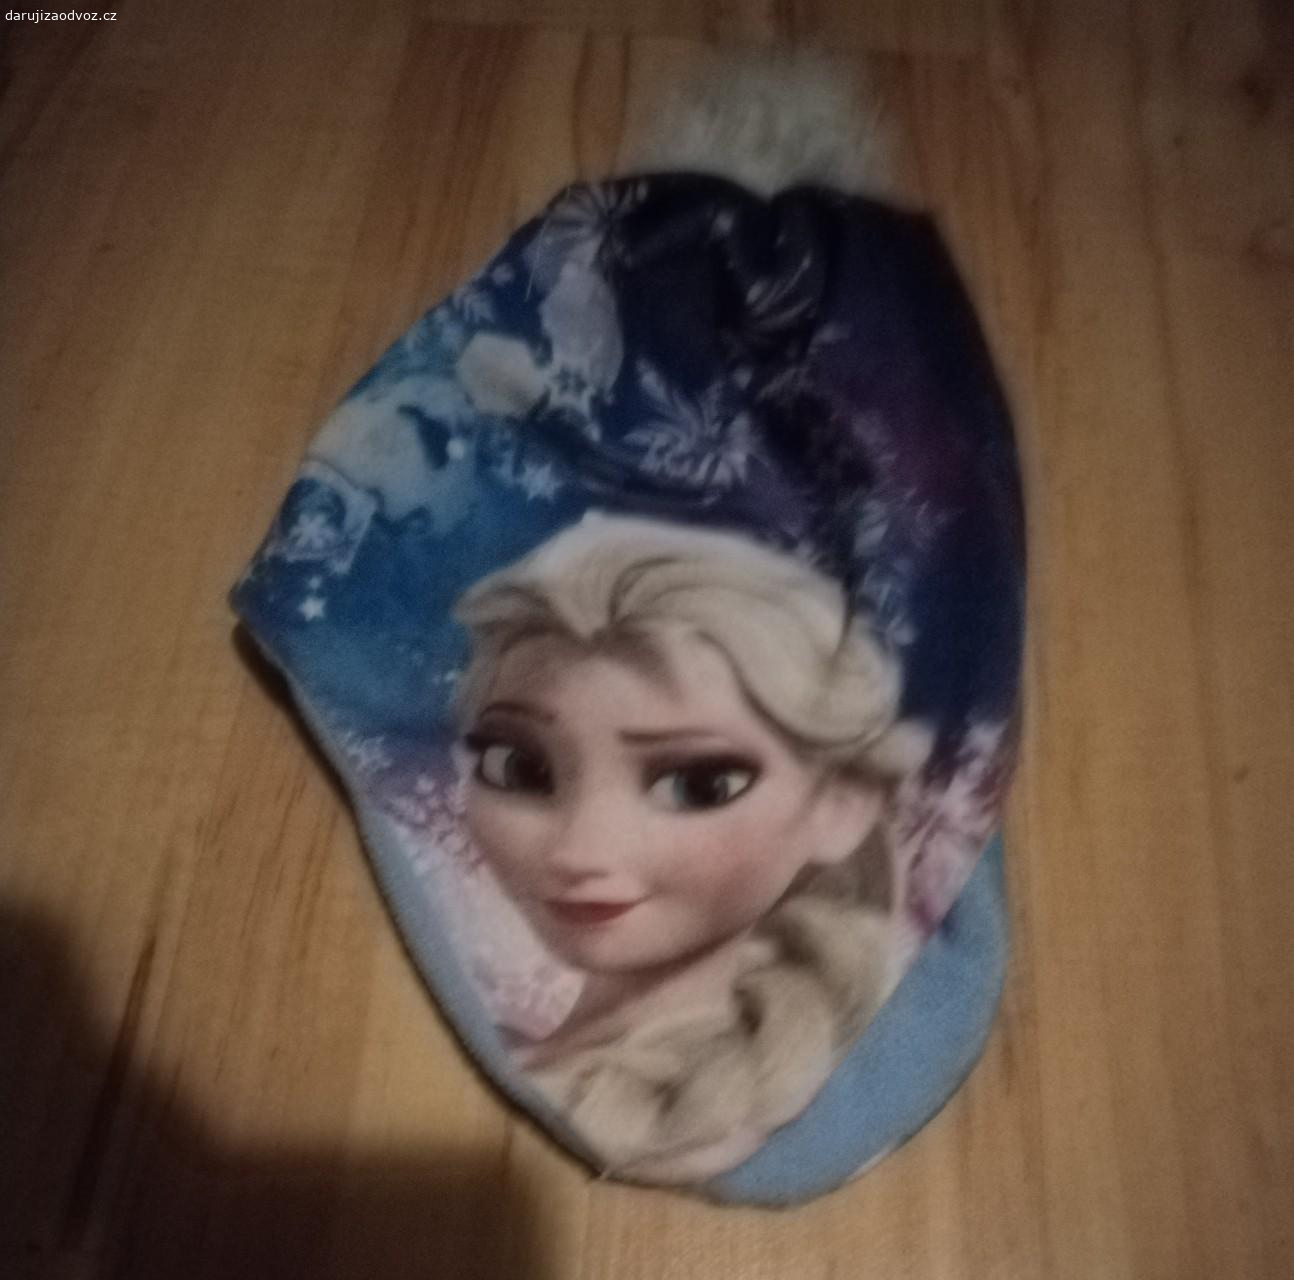 Dívčí čepice Frozen. 6Daruji čepici s Elsou, velikost cca 5-7 let, předám v Praze 10 Strašnice, nikam nenosím neposílám, uvítám rychlé jednání.